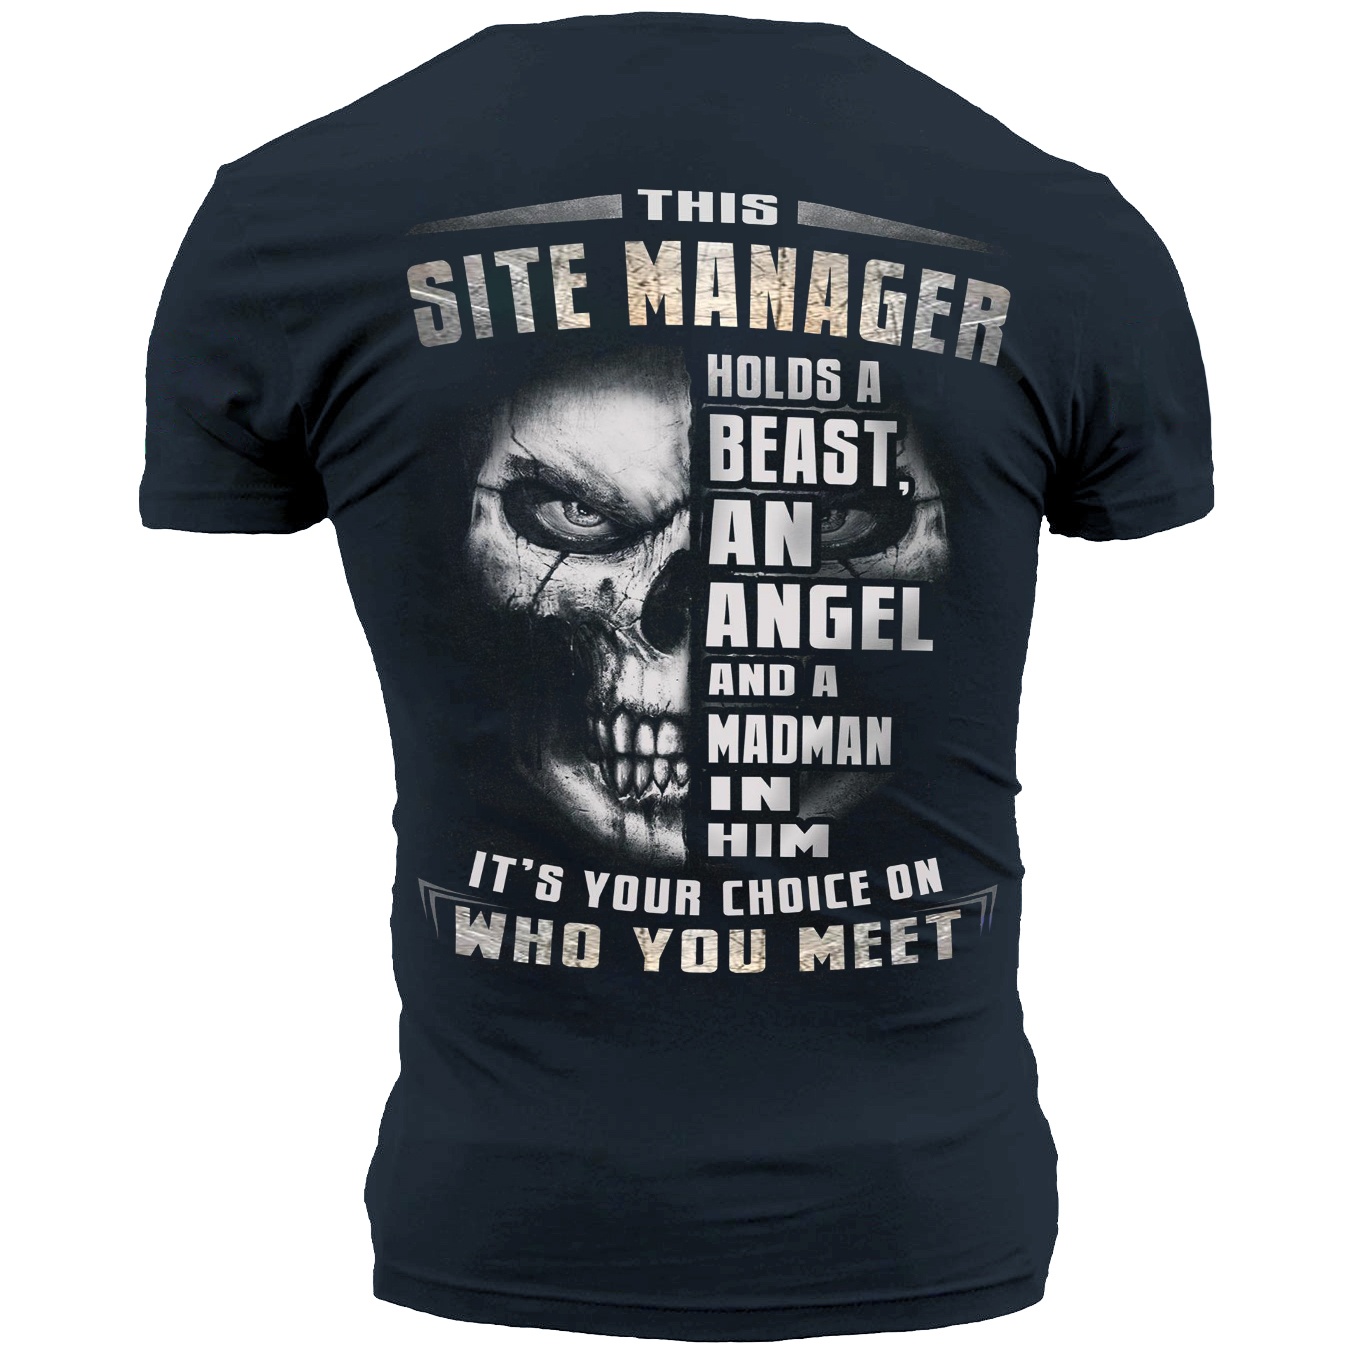 site manager shirt.jpeg